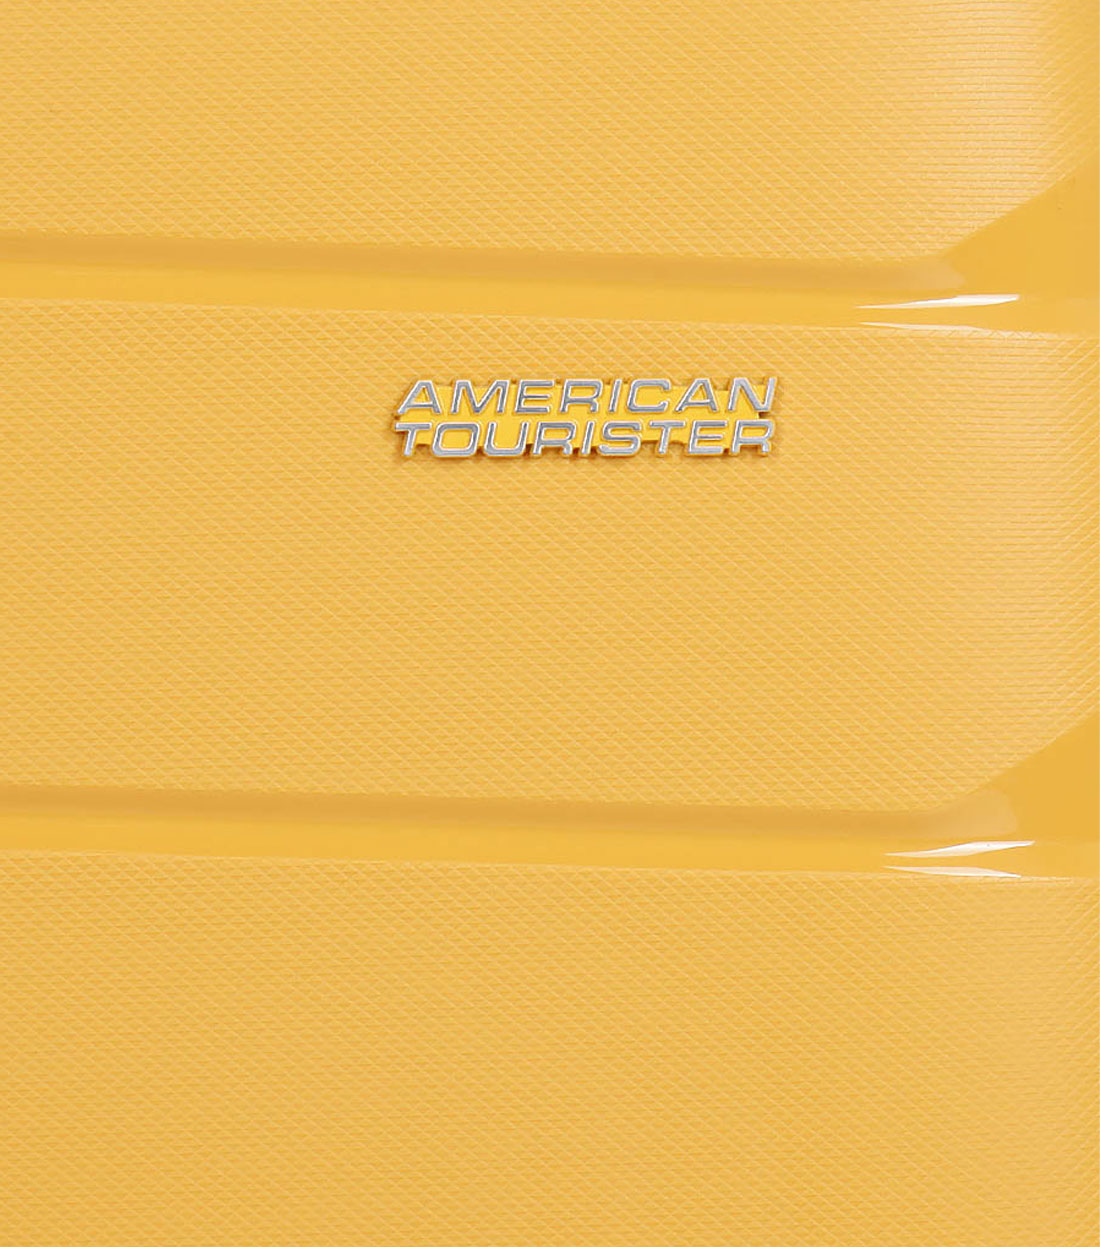 Малый чемодан American Tourister Air Move MC8*06901 (55 см) - Sunset Yellow